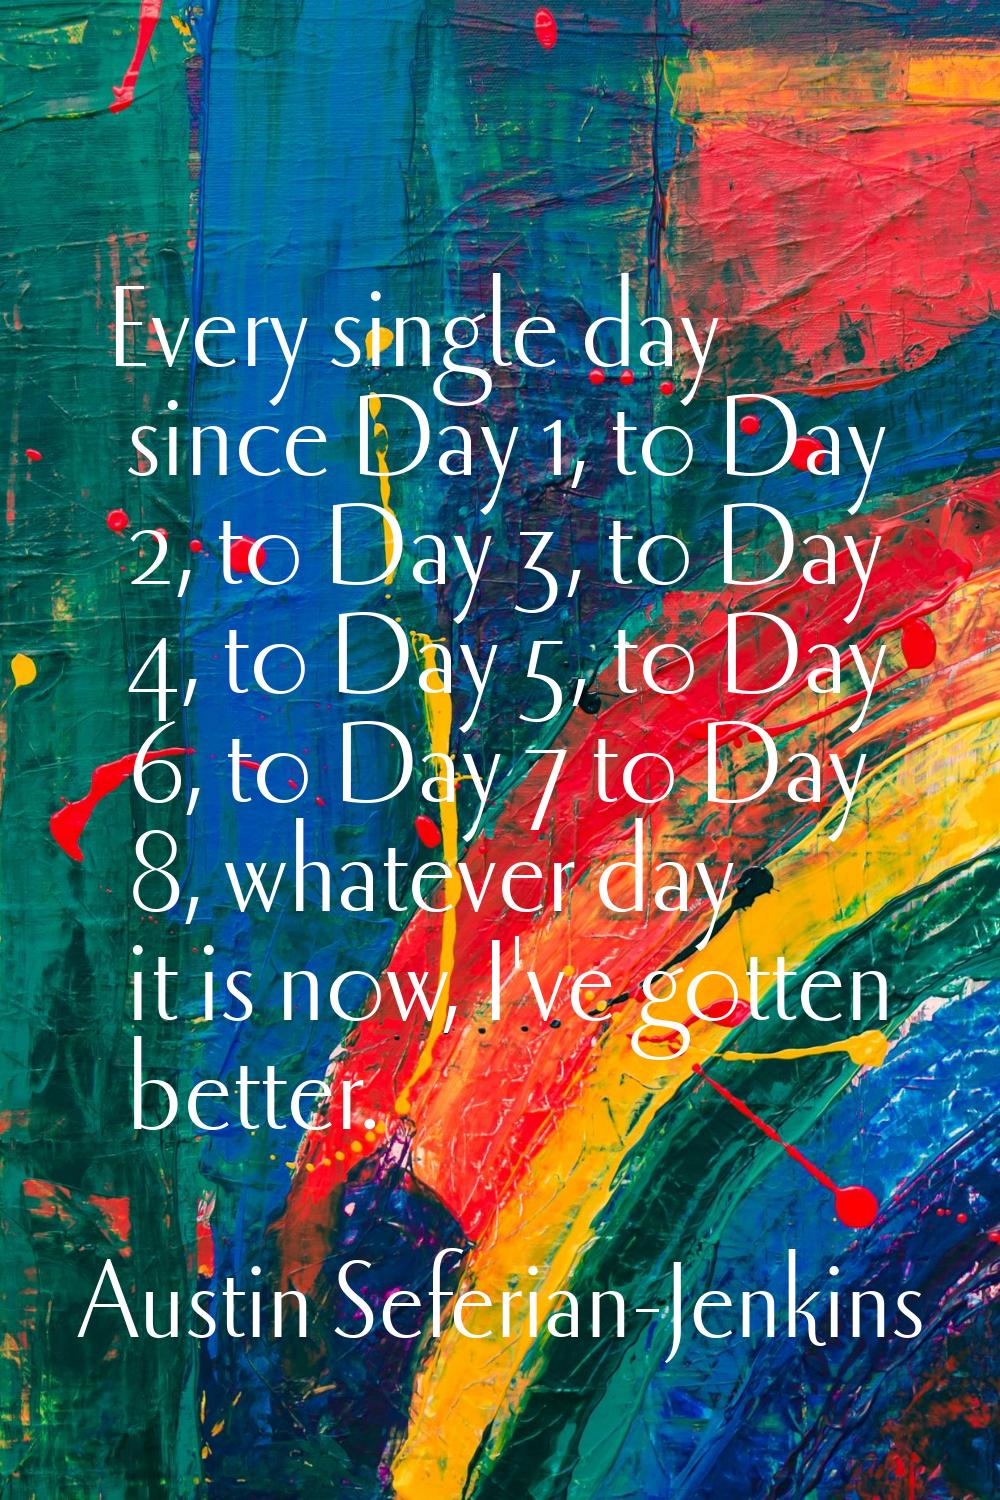 Every single day since Day 1, to Day 2, to Day 3, to Day 4, to Day 5, to Day 6, to Day 7 to Day 8, 